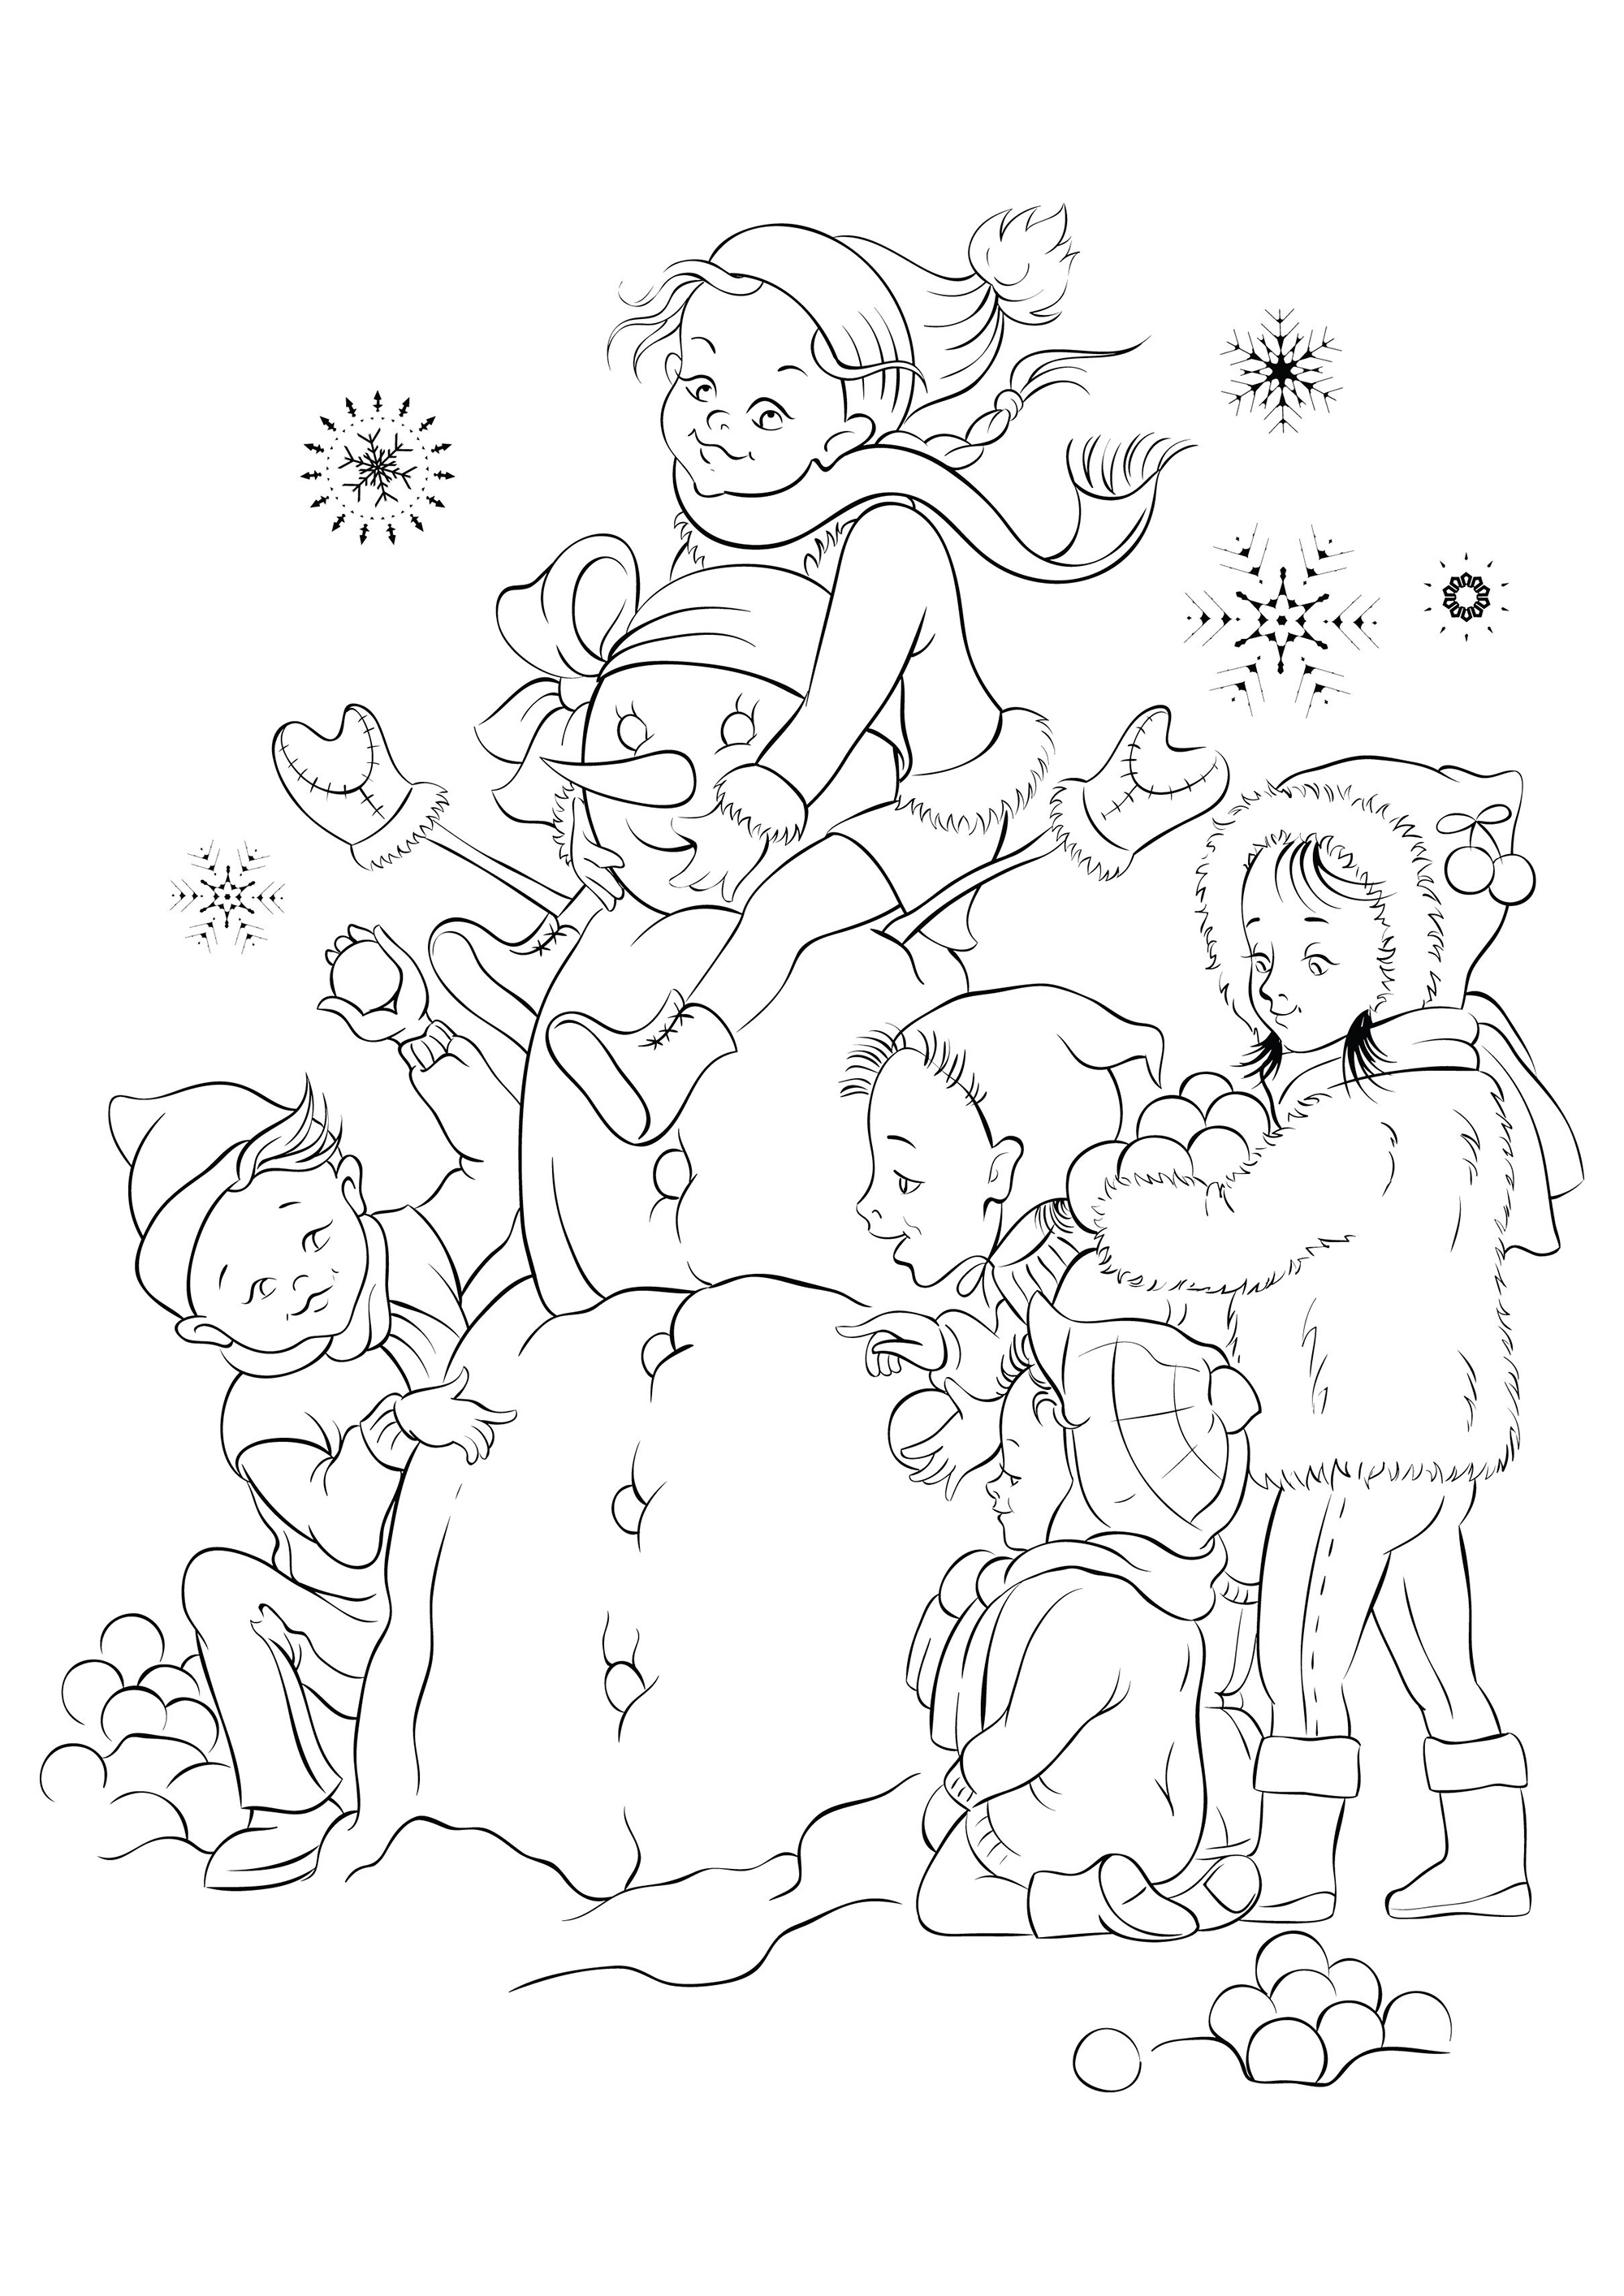 Crianças felizes a fazer um boneco de neve